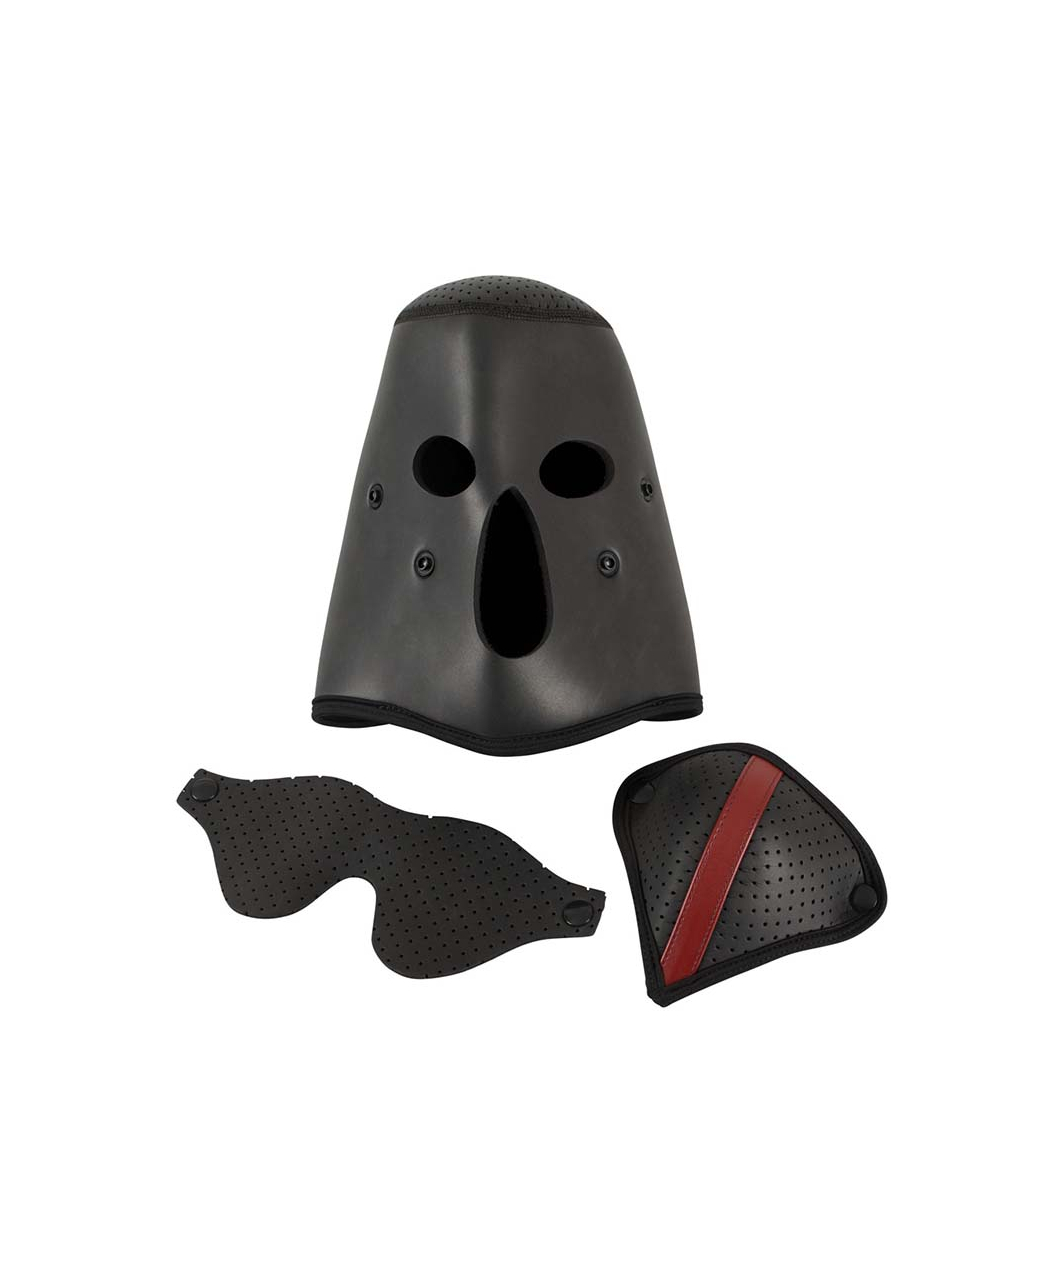 Fetish Collection маска для лица со съемными частями